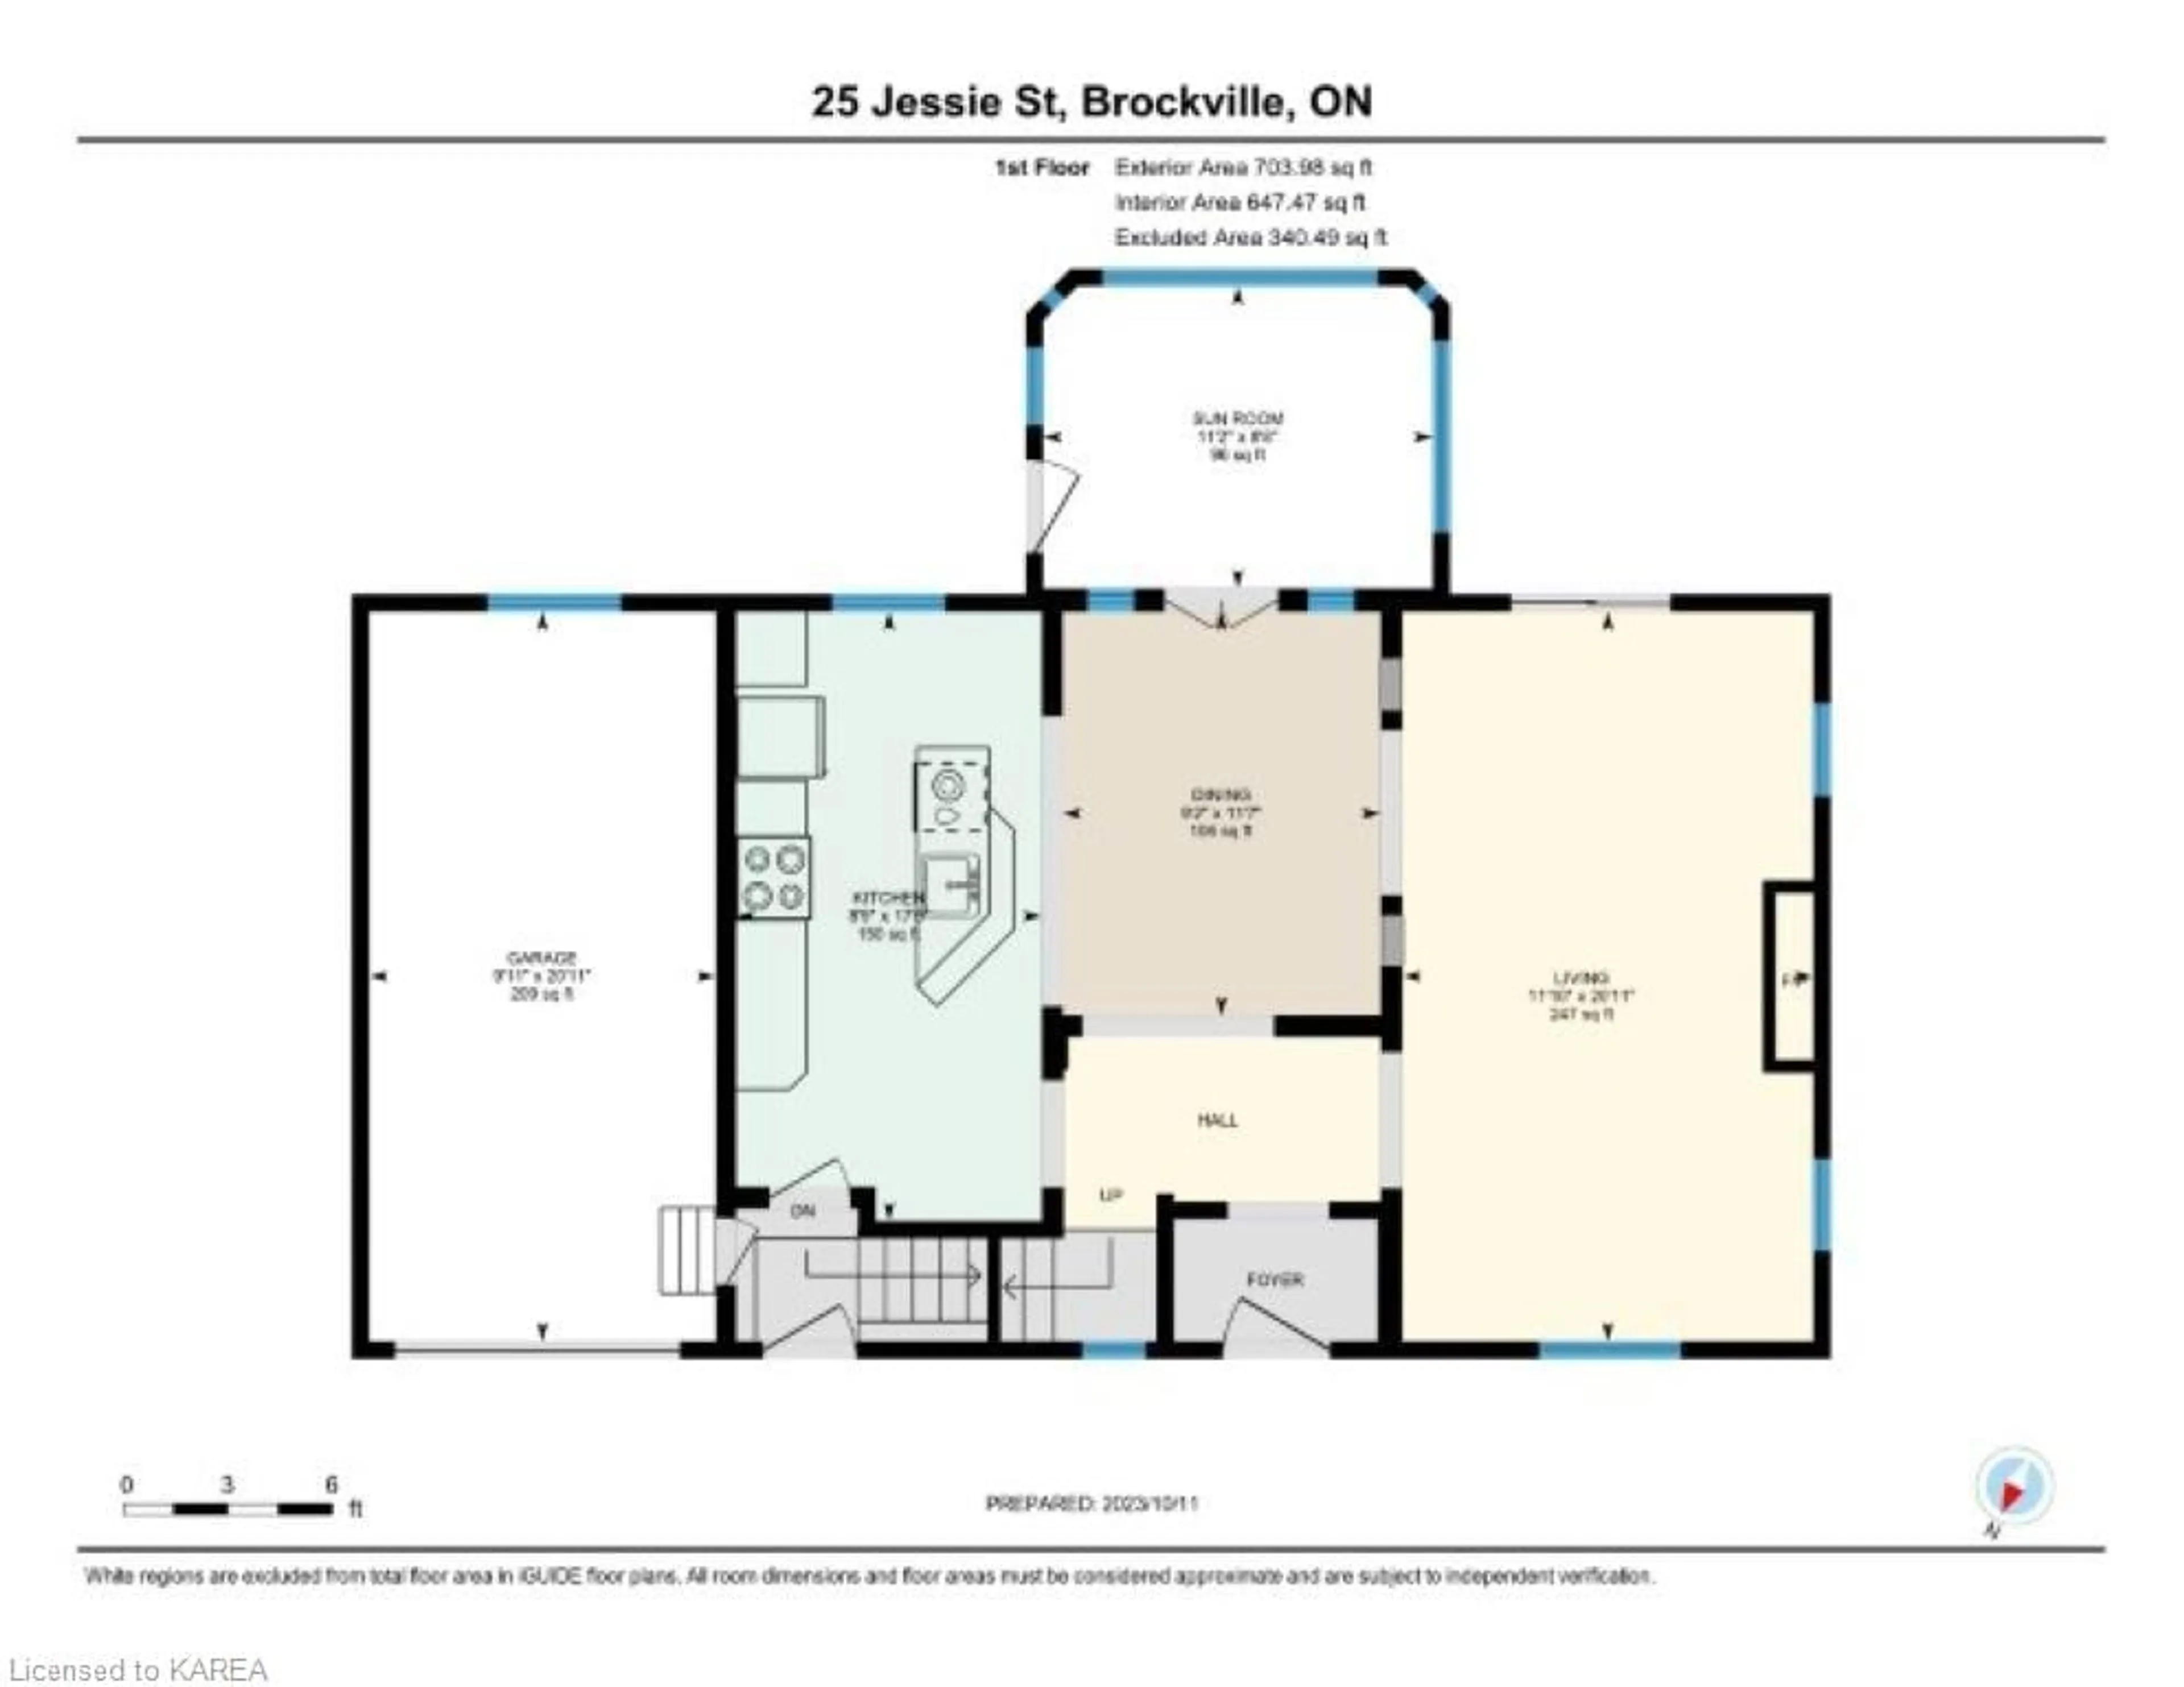 Floor plan for 25 Jessie St, Brockville Ontario K6V 3M6